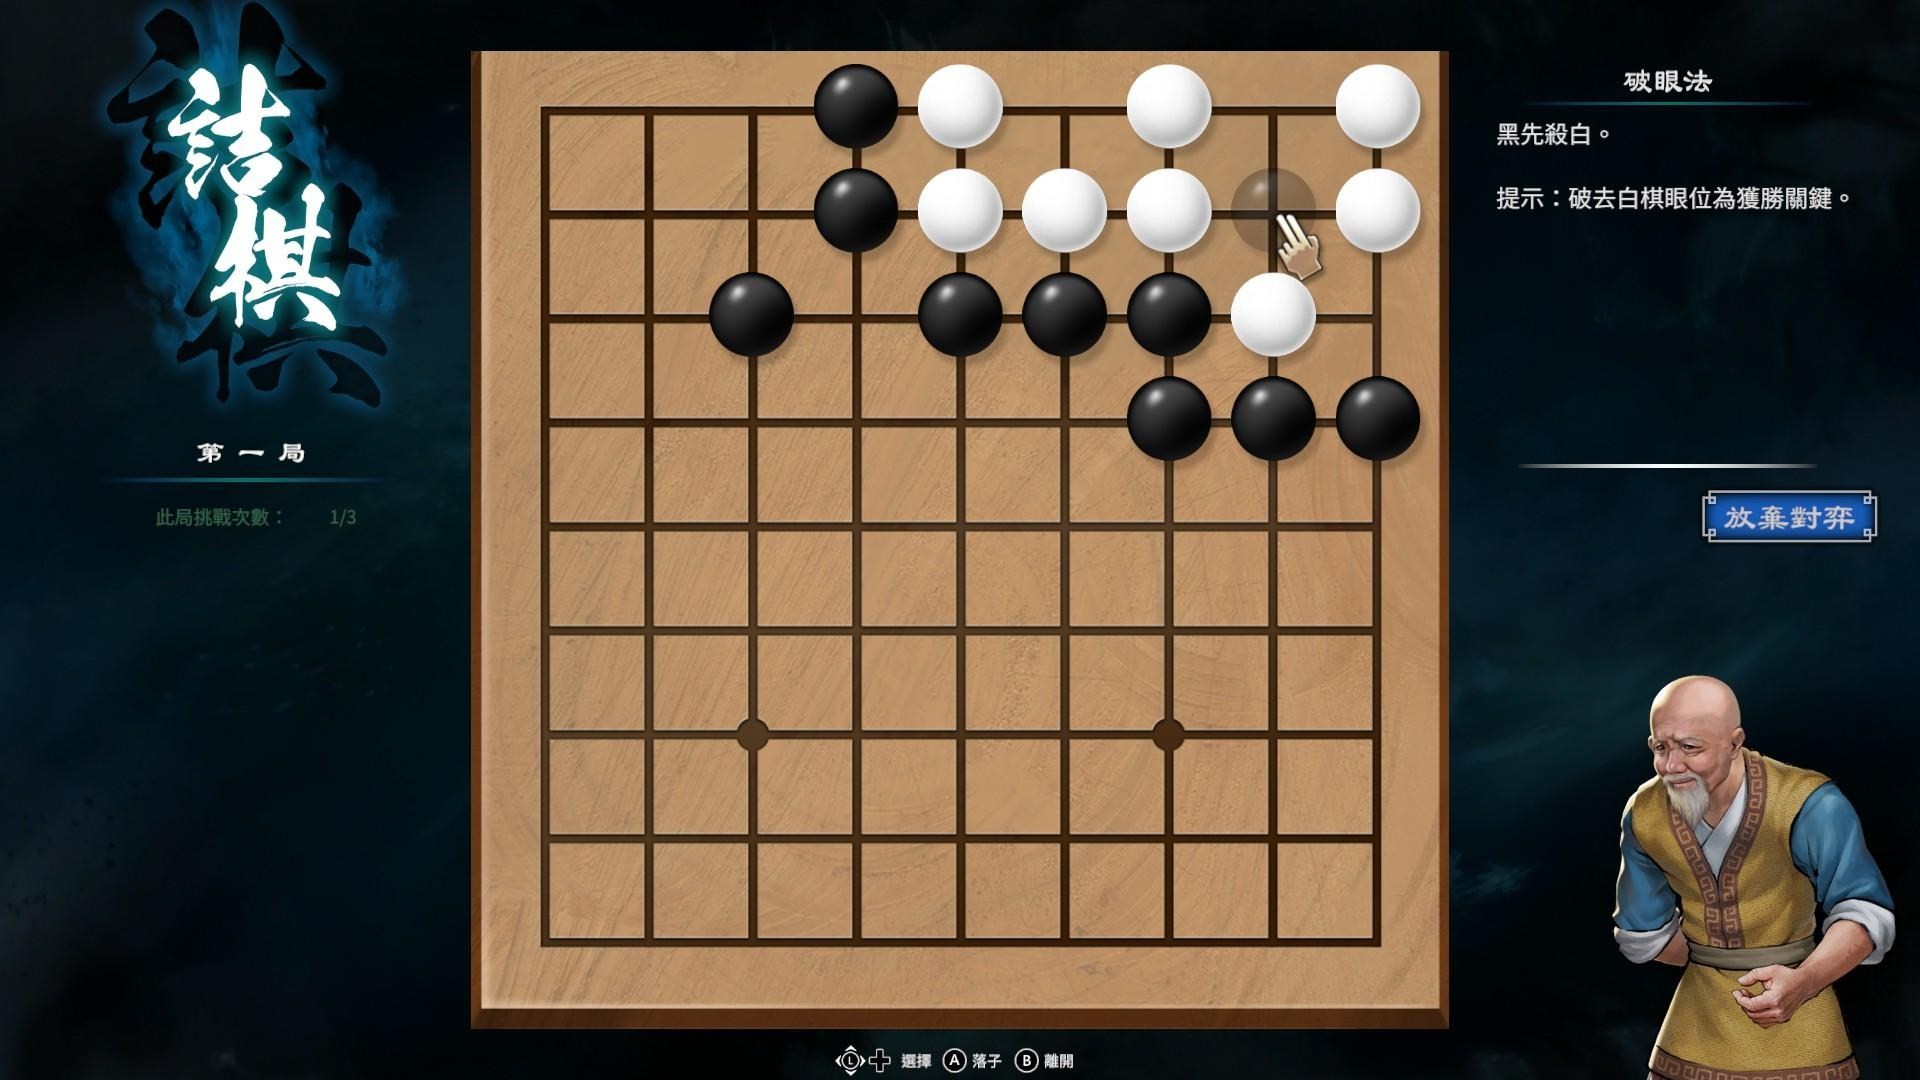 《天命奇御2》围棋基本概念与棋型解法介绍 - 第7张